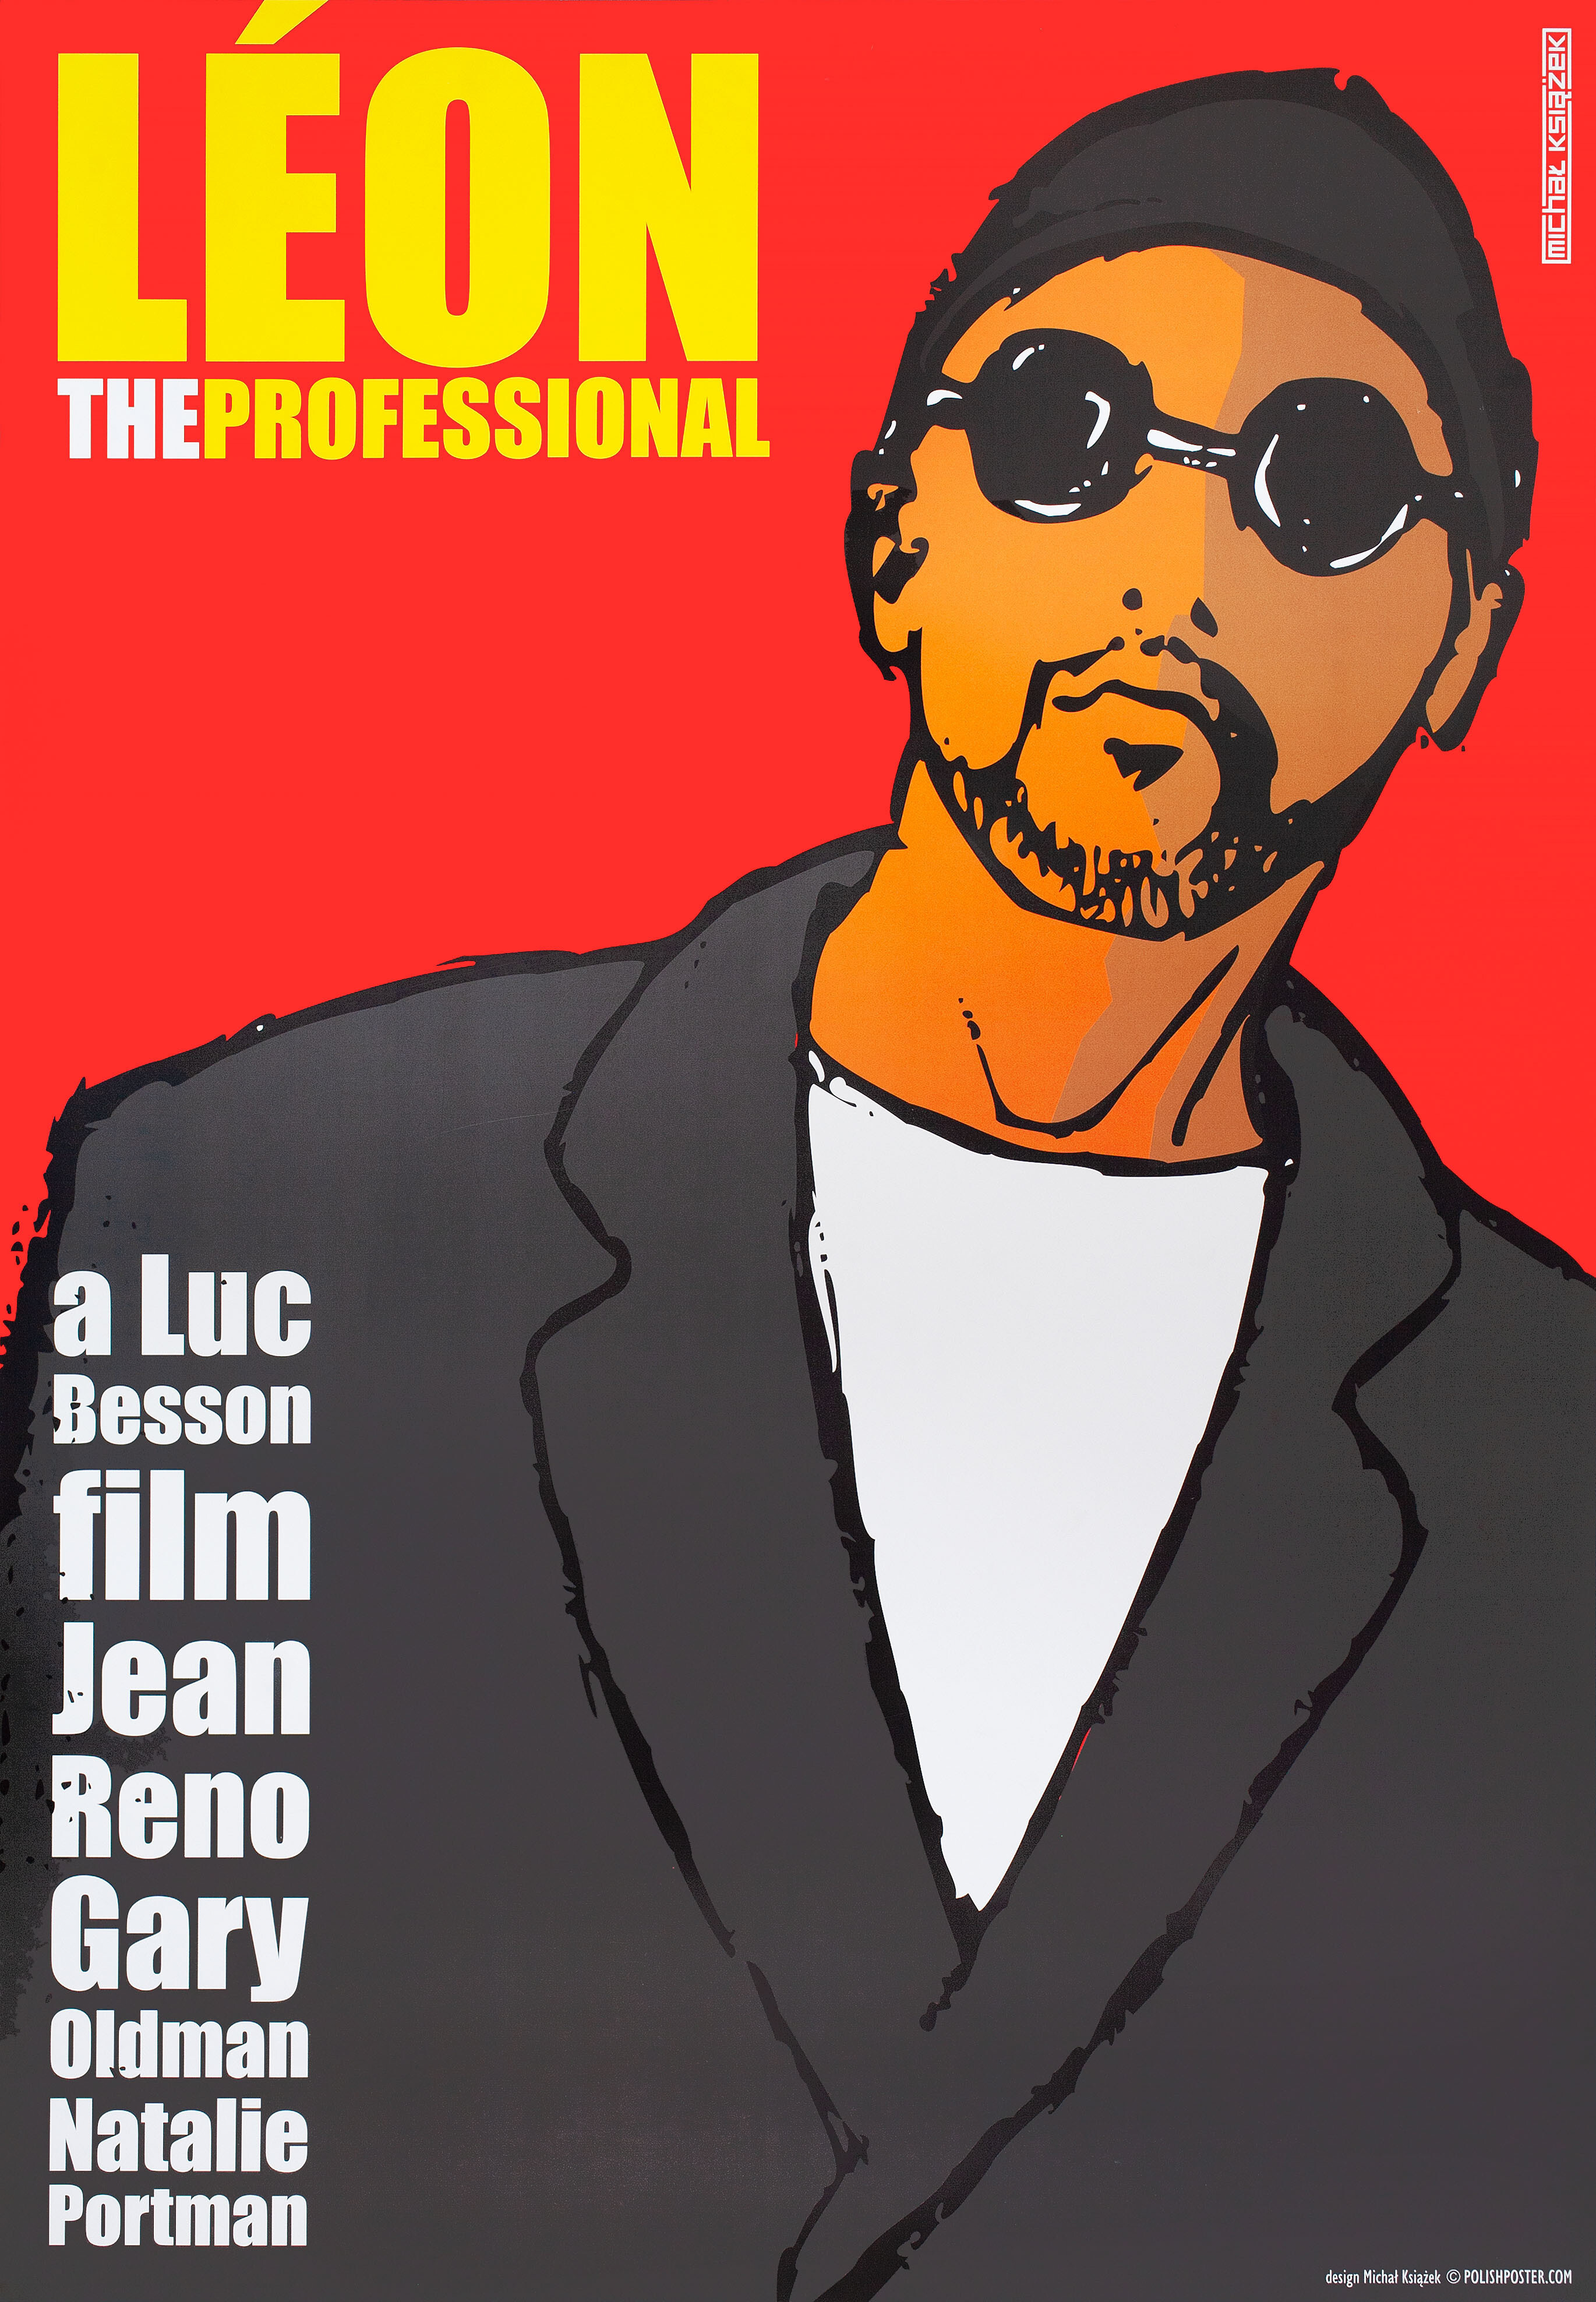 Леон (Leon The Professional, 1994), режиссёр Люк Бессон, польский плакат к фильму, 2010 год, автор Михал Ксязек